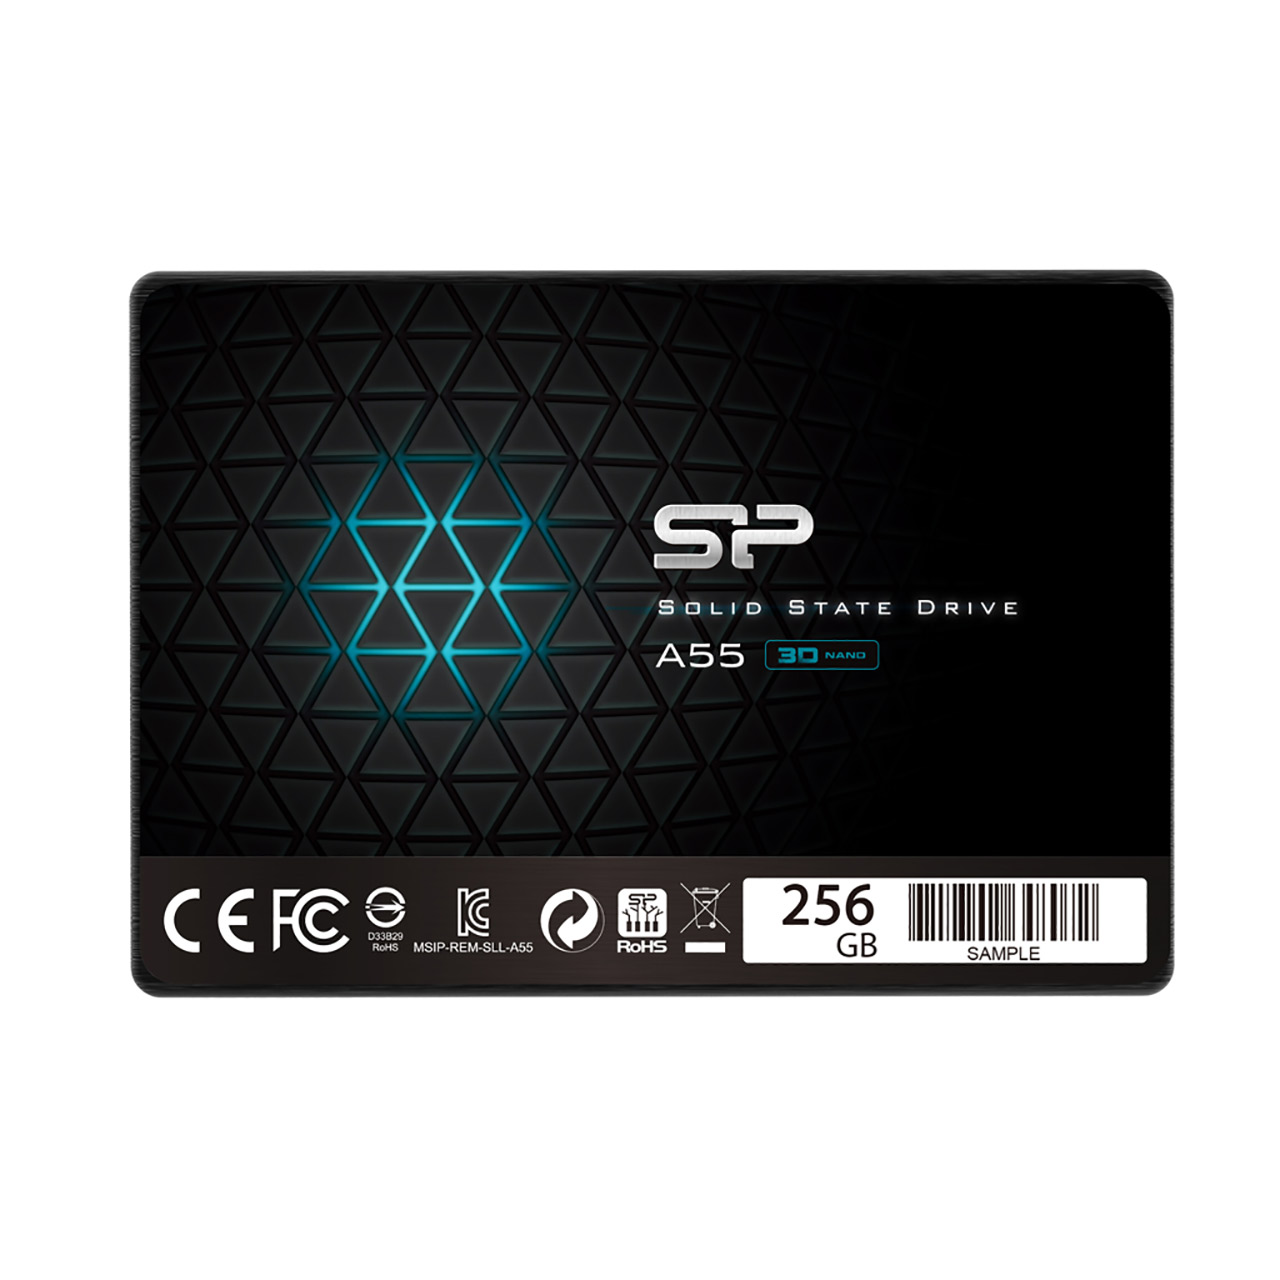 حافظه SSD برند Silicon Power مدل A55 ظرفیت 256GB 

Silicon Power A55 256GB SATA III SSD